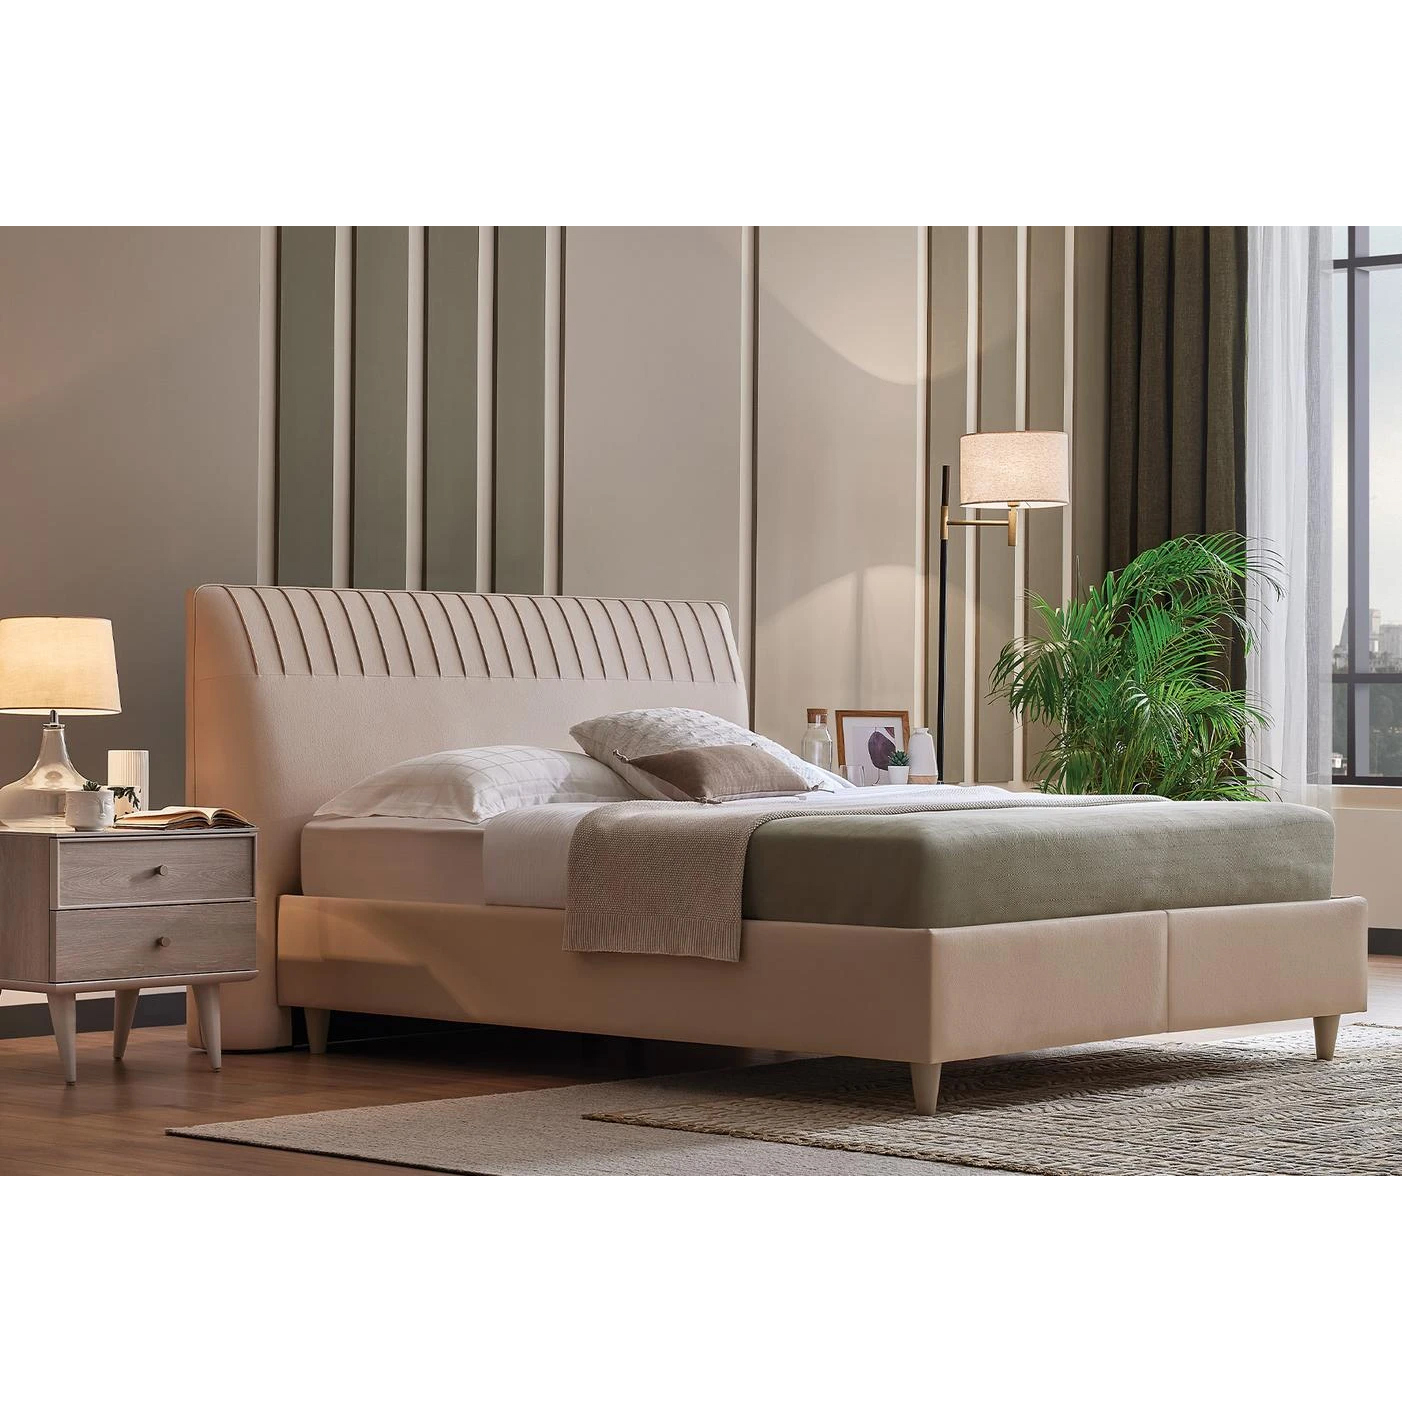 Кровать Enza Home Basel, 160х200 см, с подъемным механизмом, кремовый 3001-K1-52102 (EH59531+EH59550)EH59531+EH59550